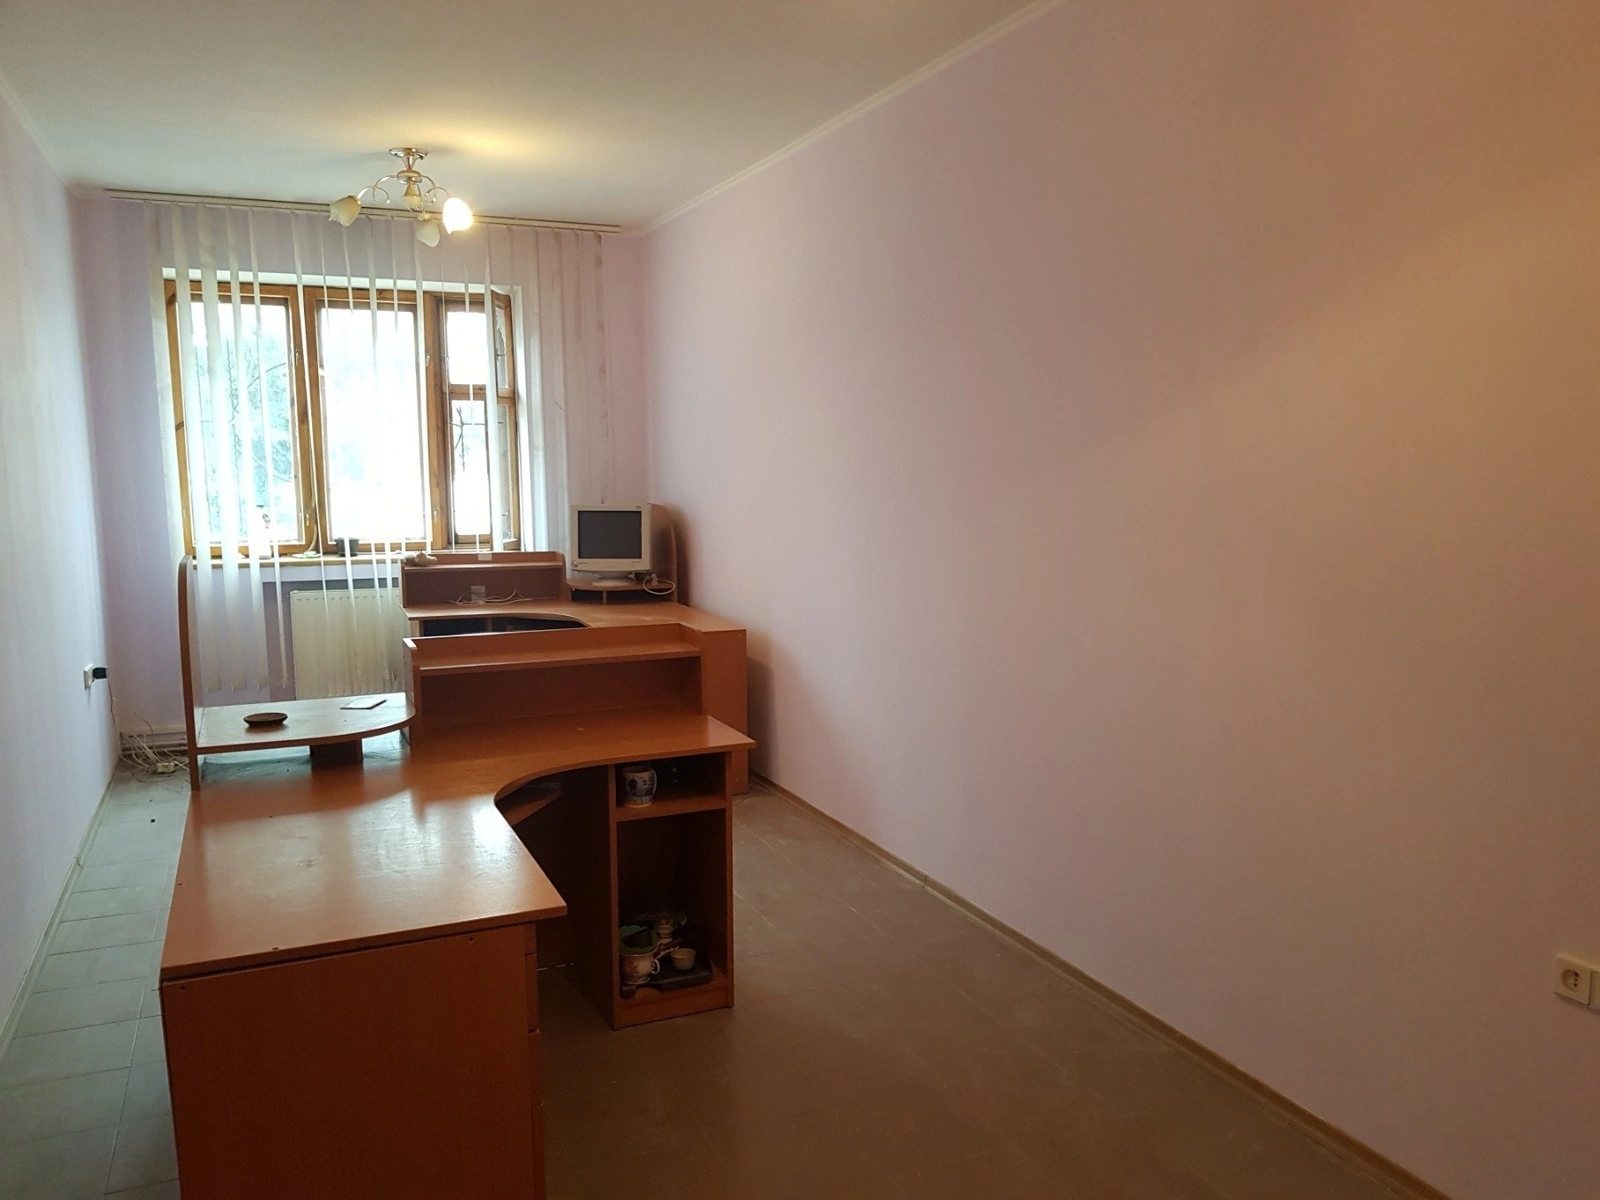 Real estate for sale for commercial purposes. 120 m², 3rd floor/3 floors. Promyshlennyy, Ternopil. 